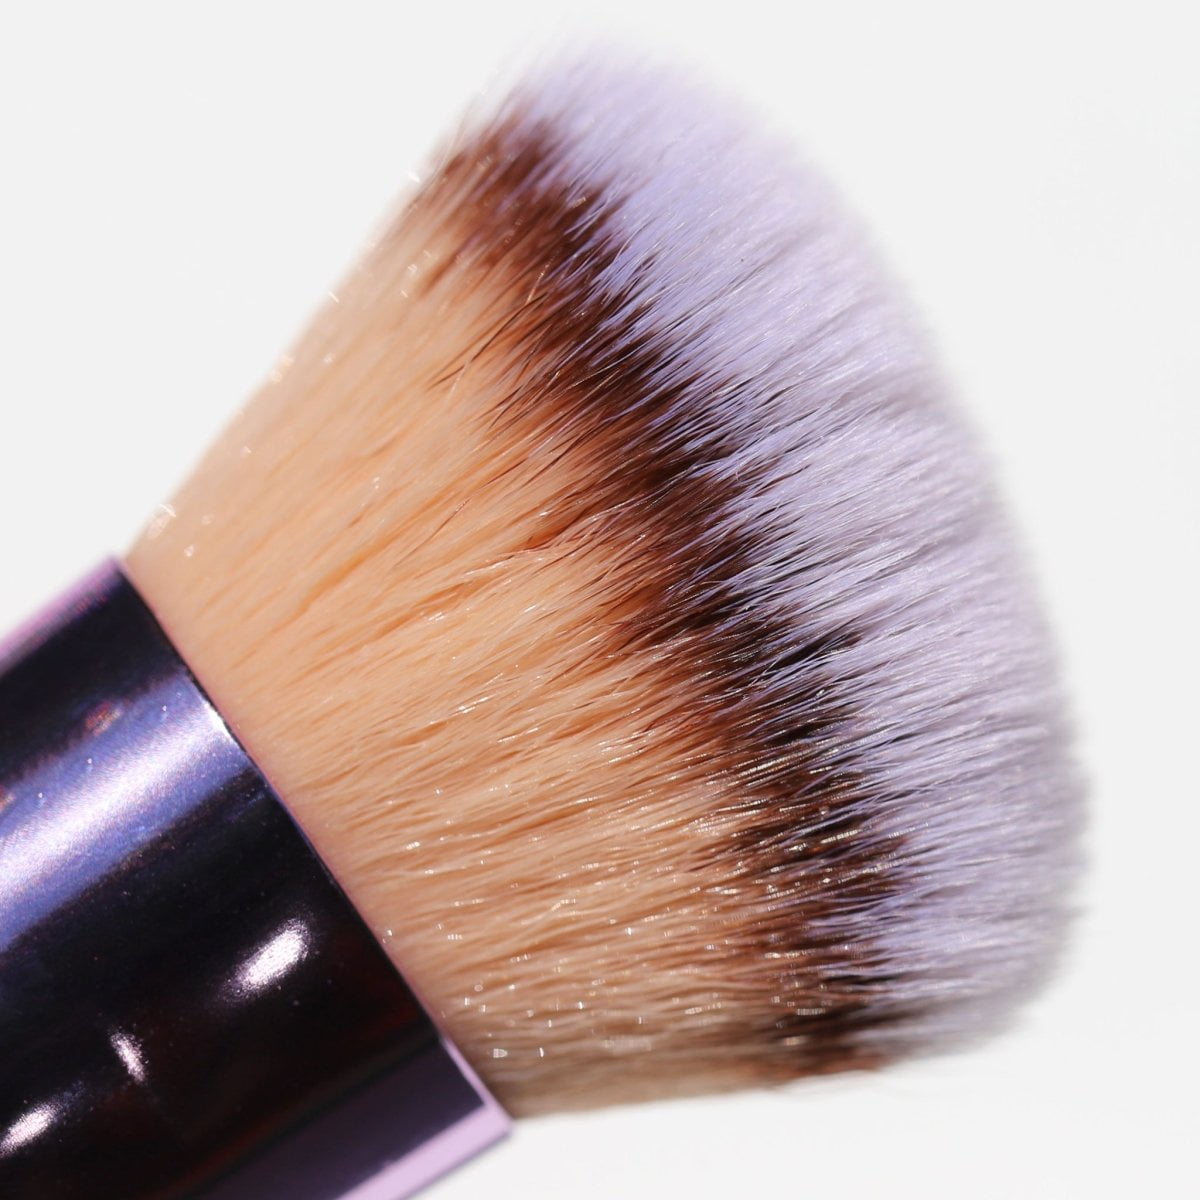 808 Blender Brush | Eyeshadow Tools by Half Caked Makeup